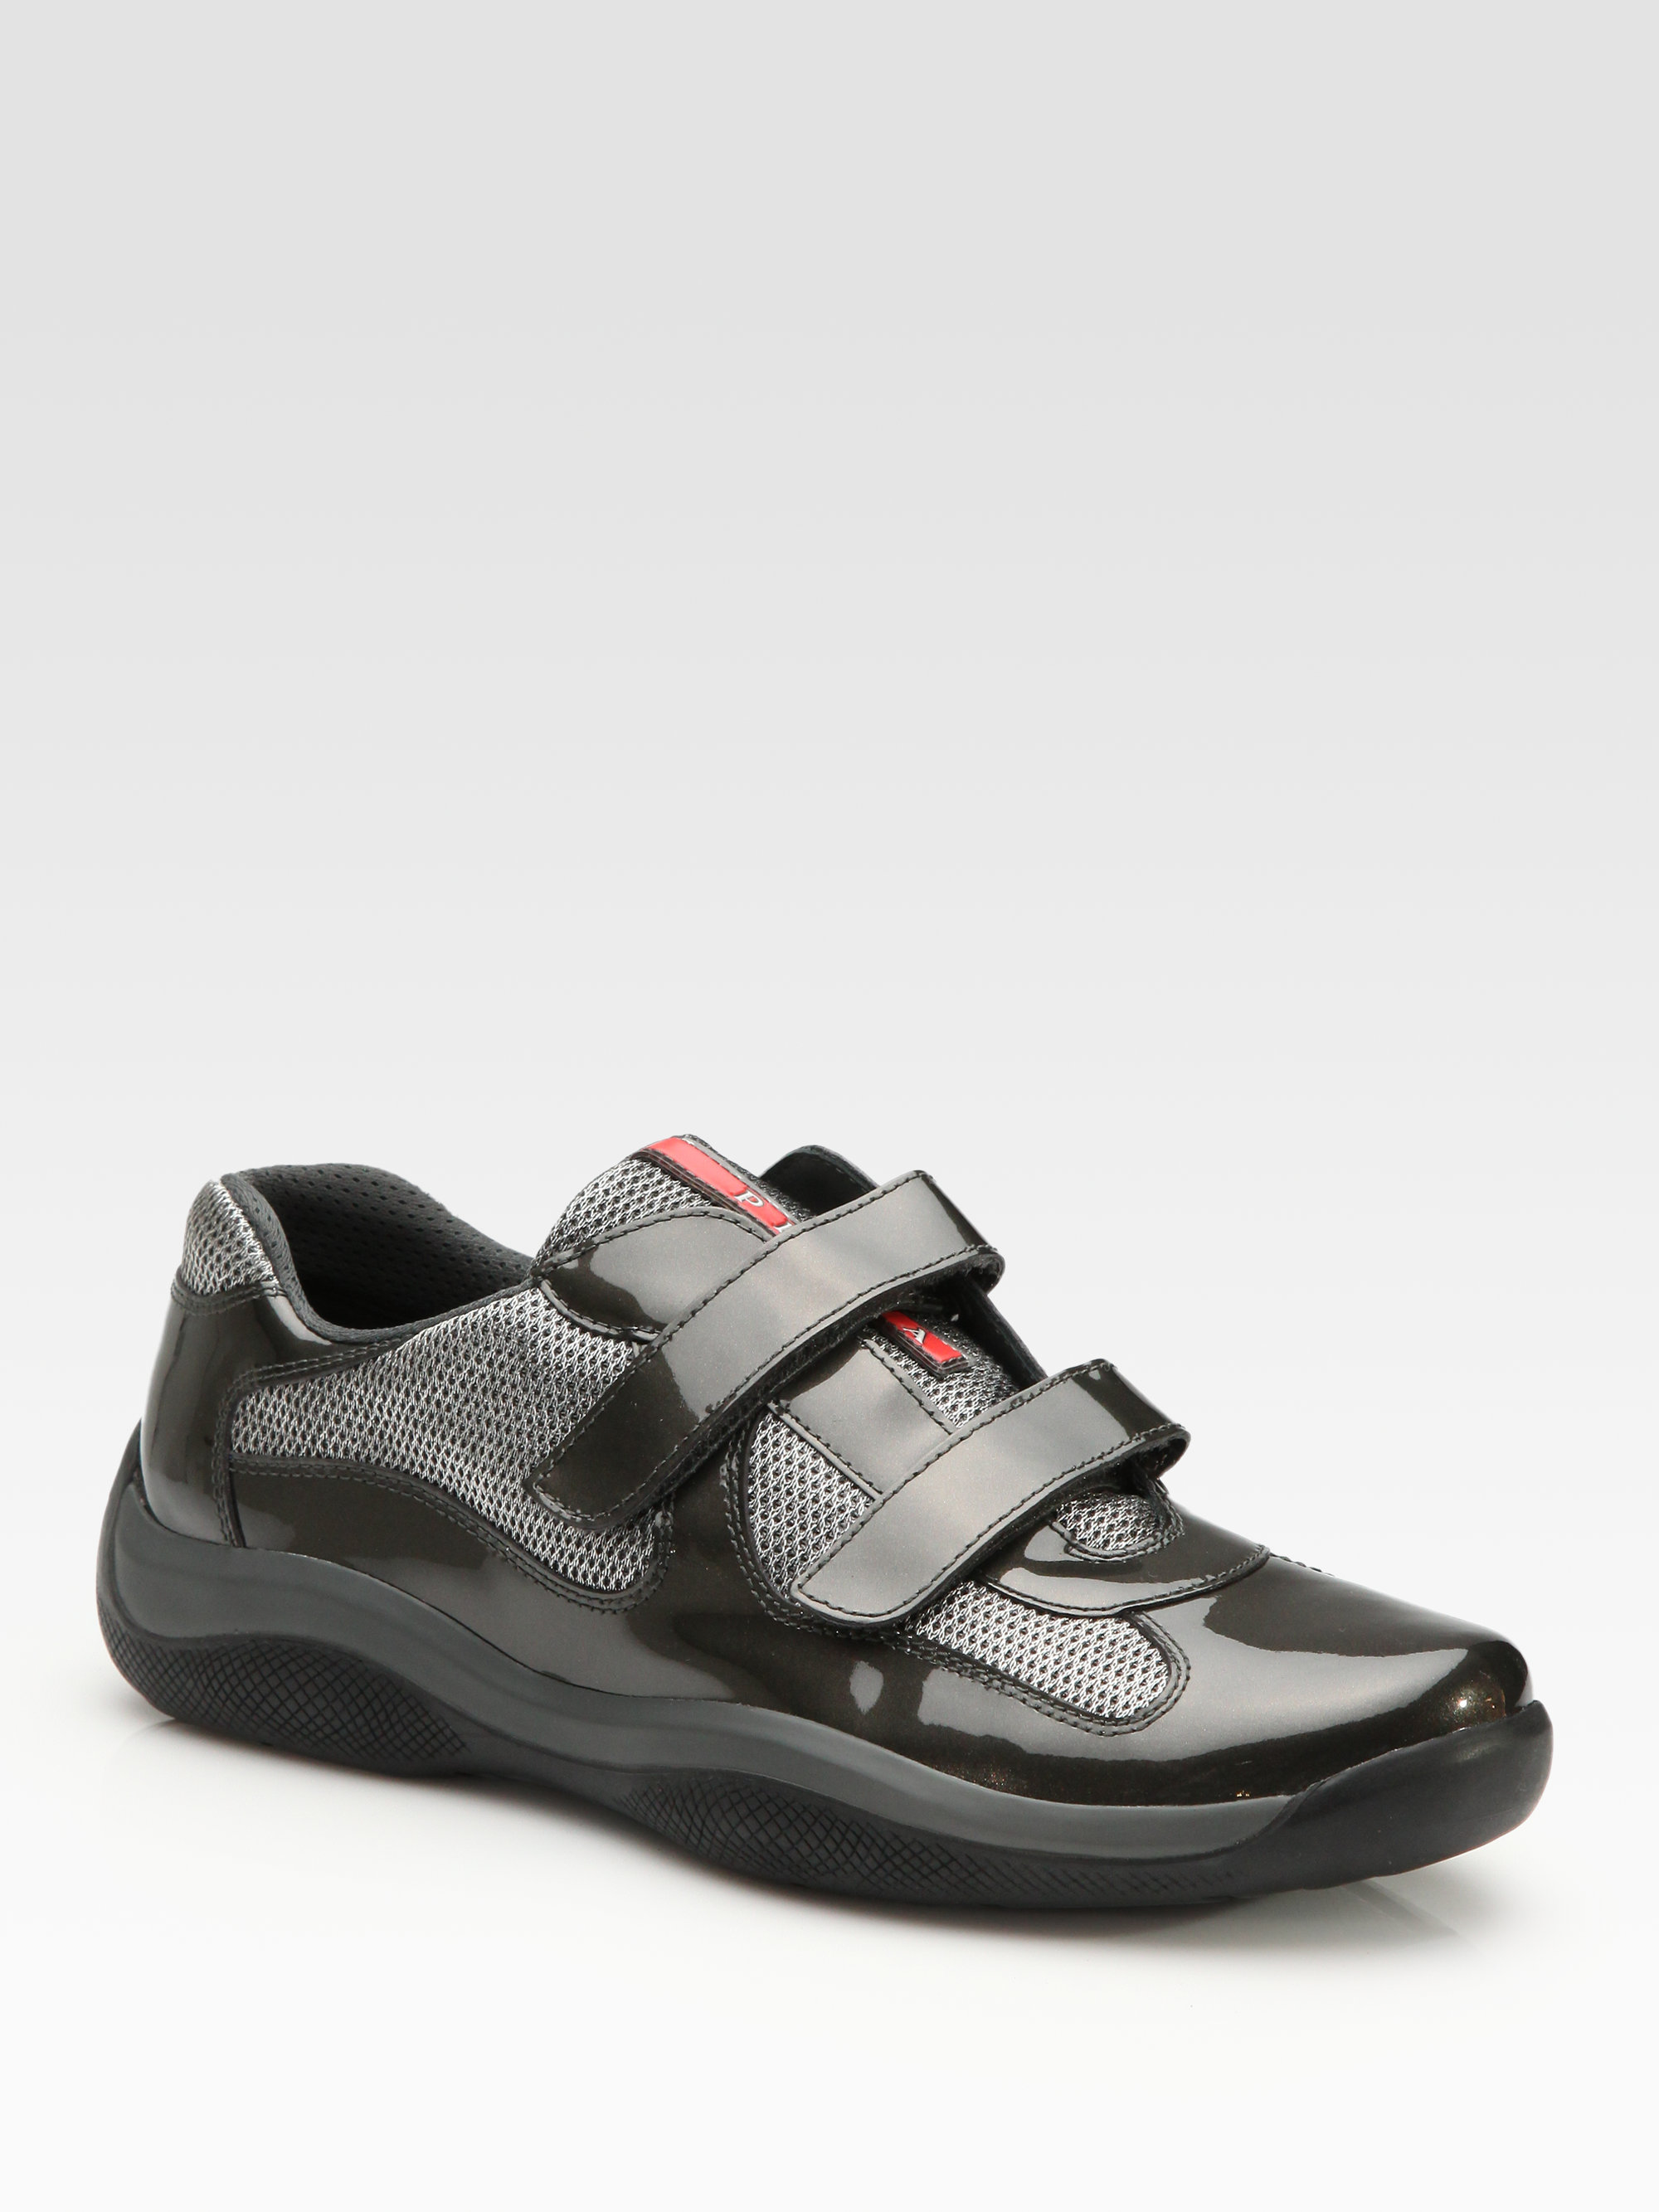 Prada Velcro-strap Sneakers in Gray for Men - Lyst